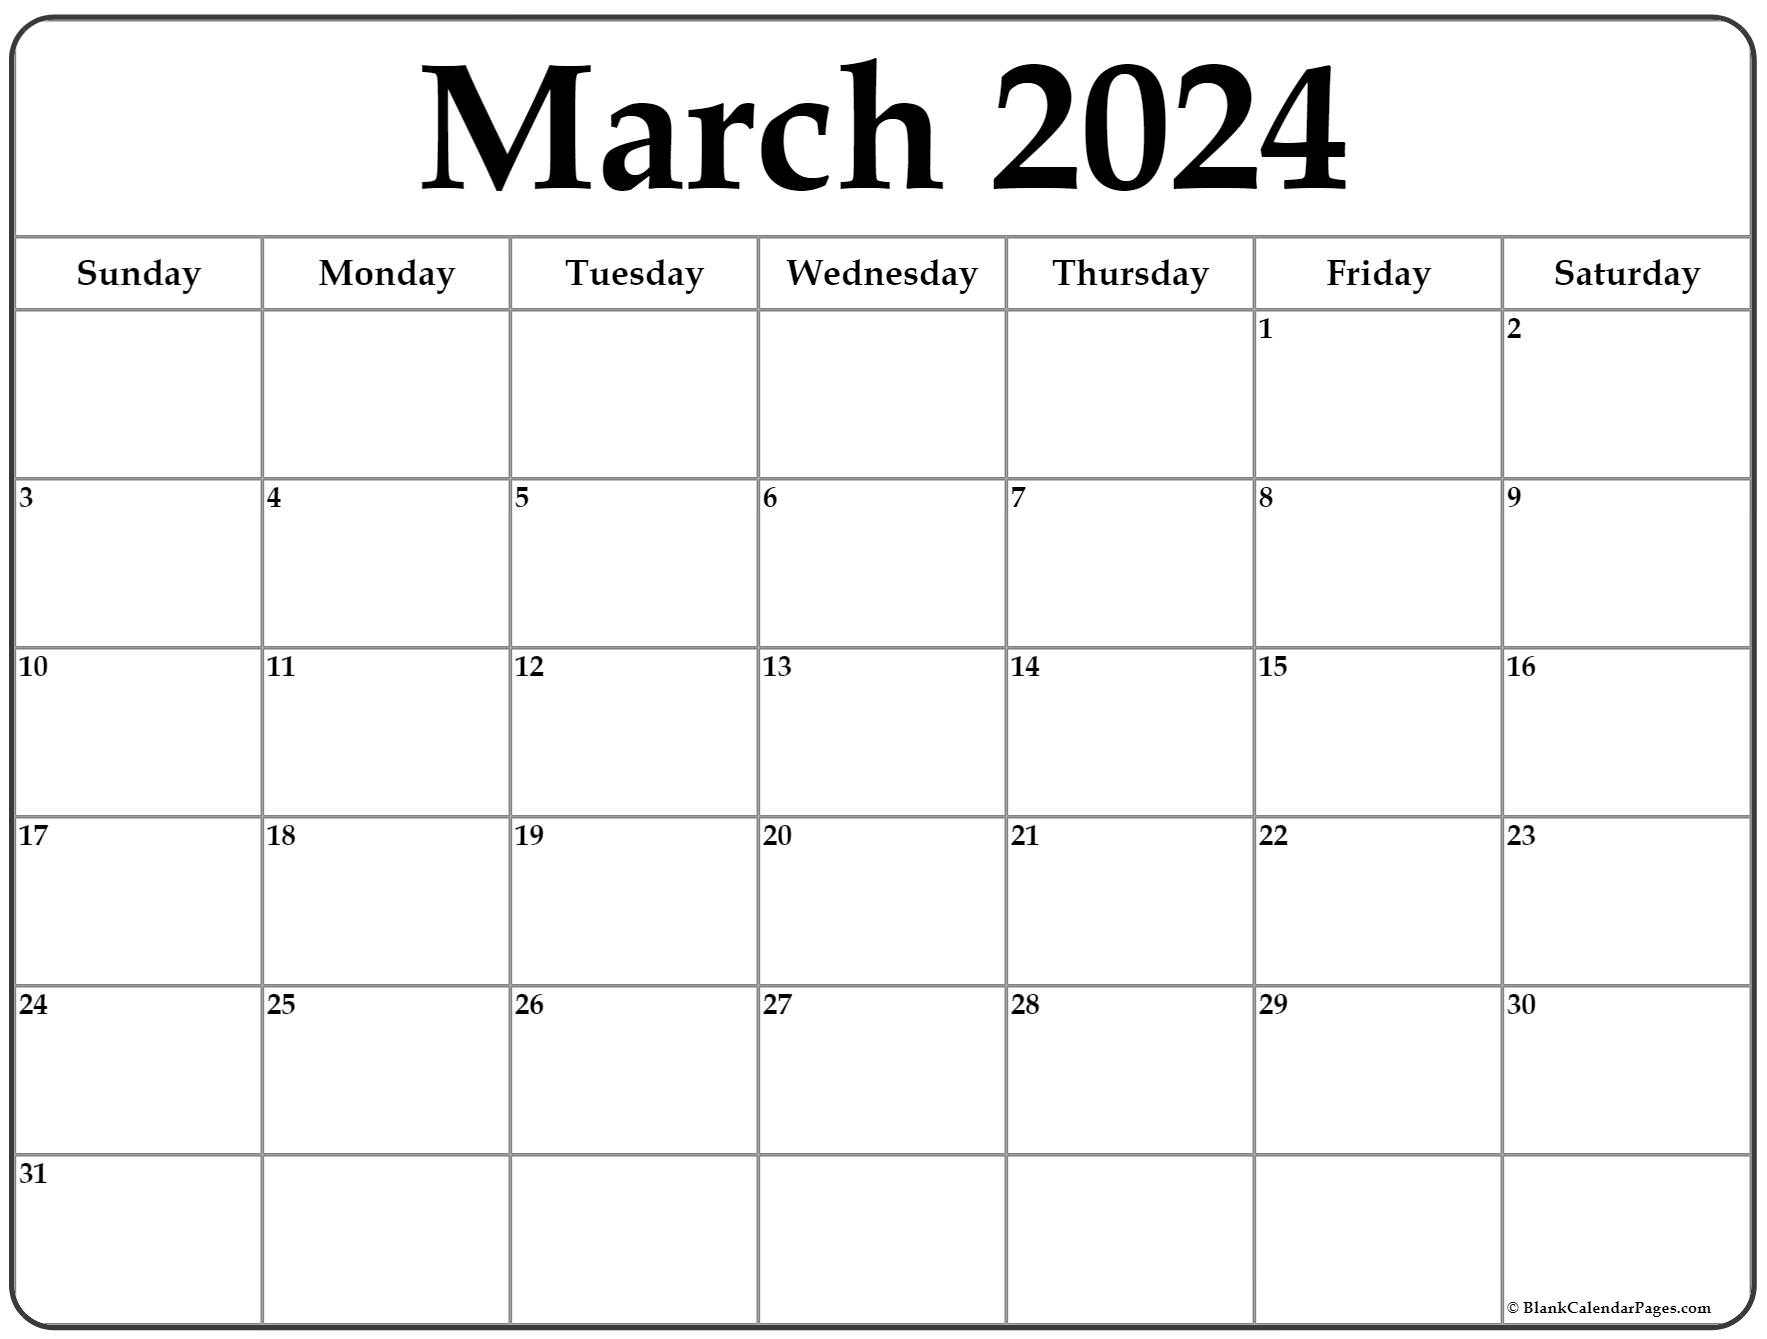 March 2022 Calendar Editable March 2022 Calendar | Free Printable Calendar Templates